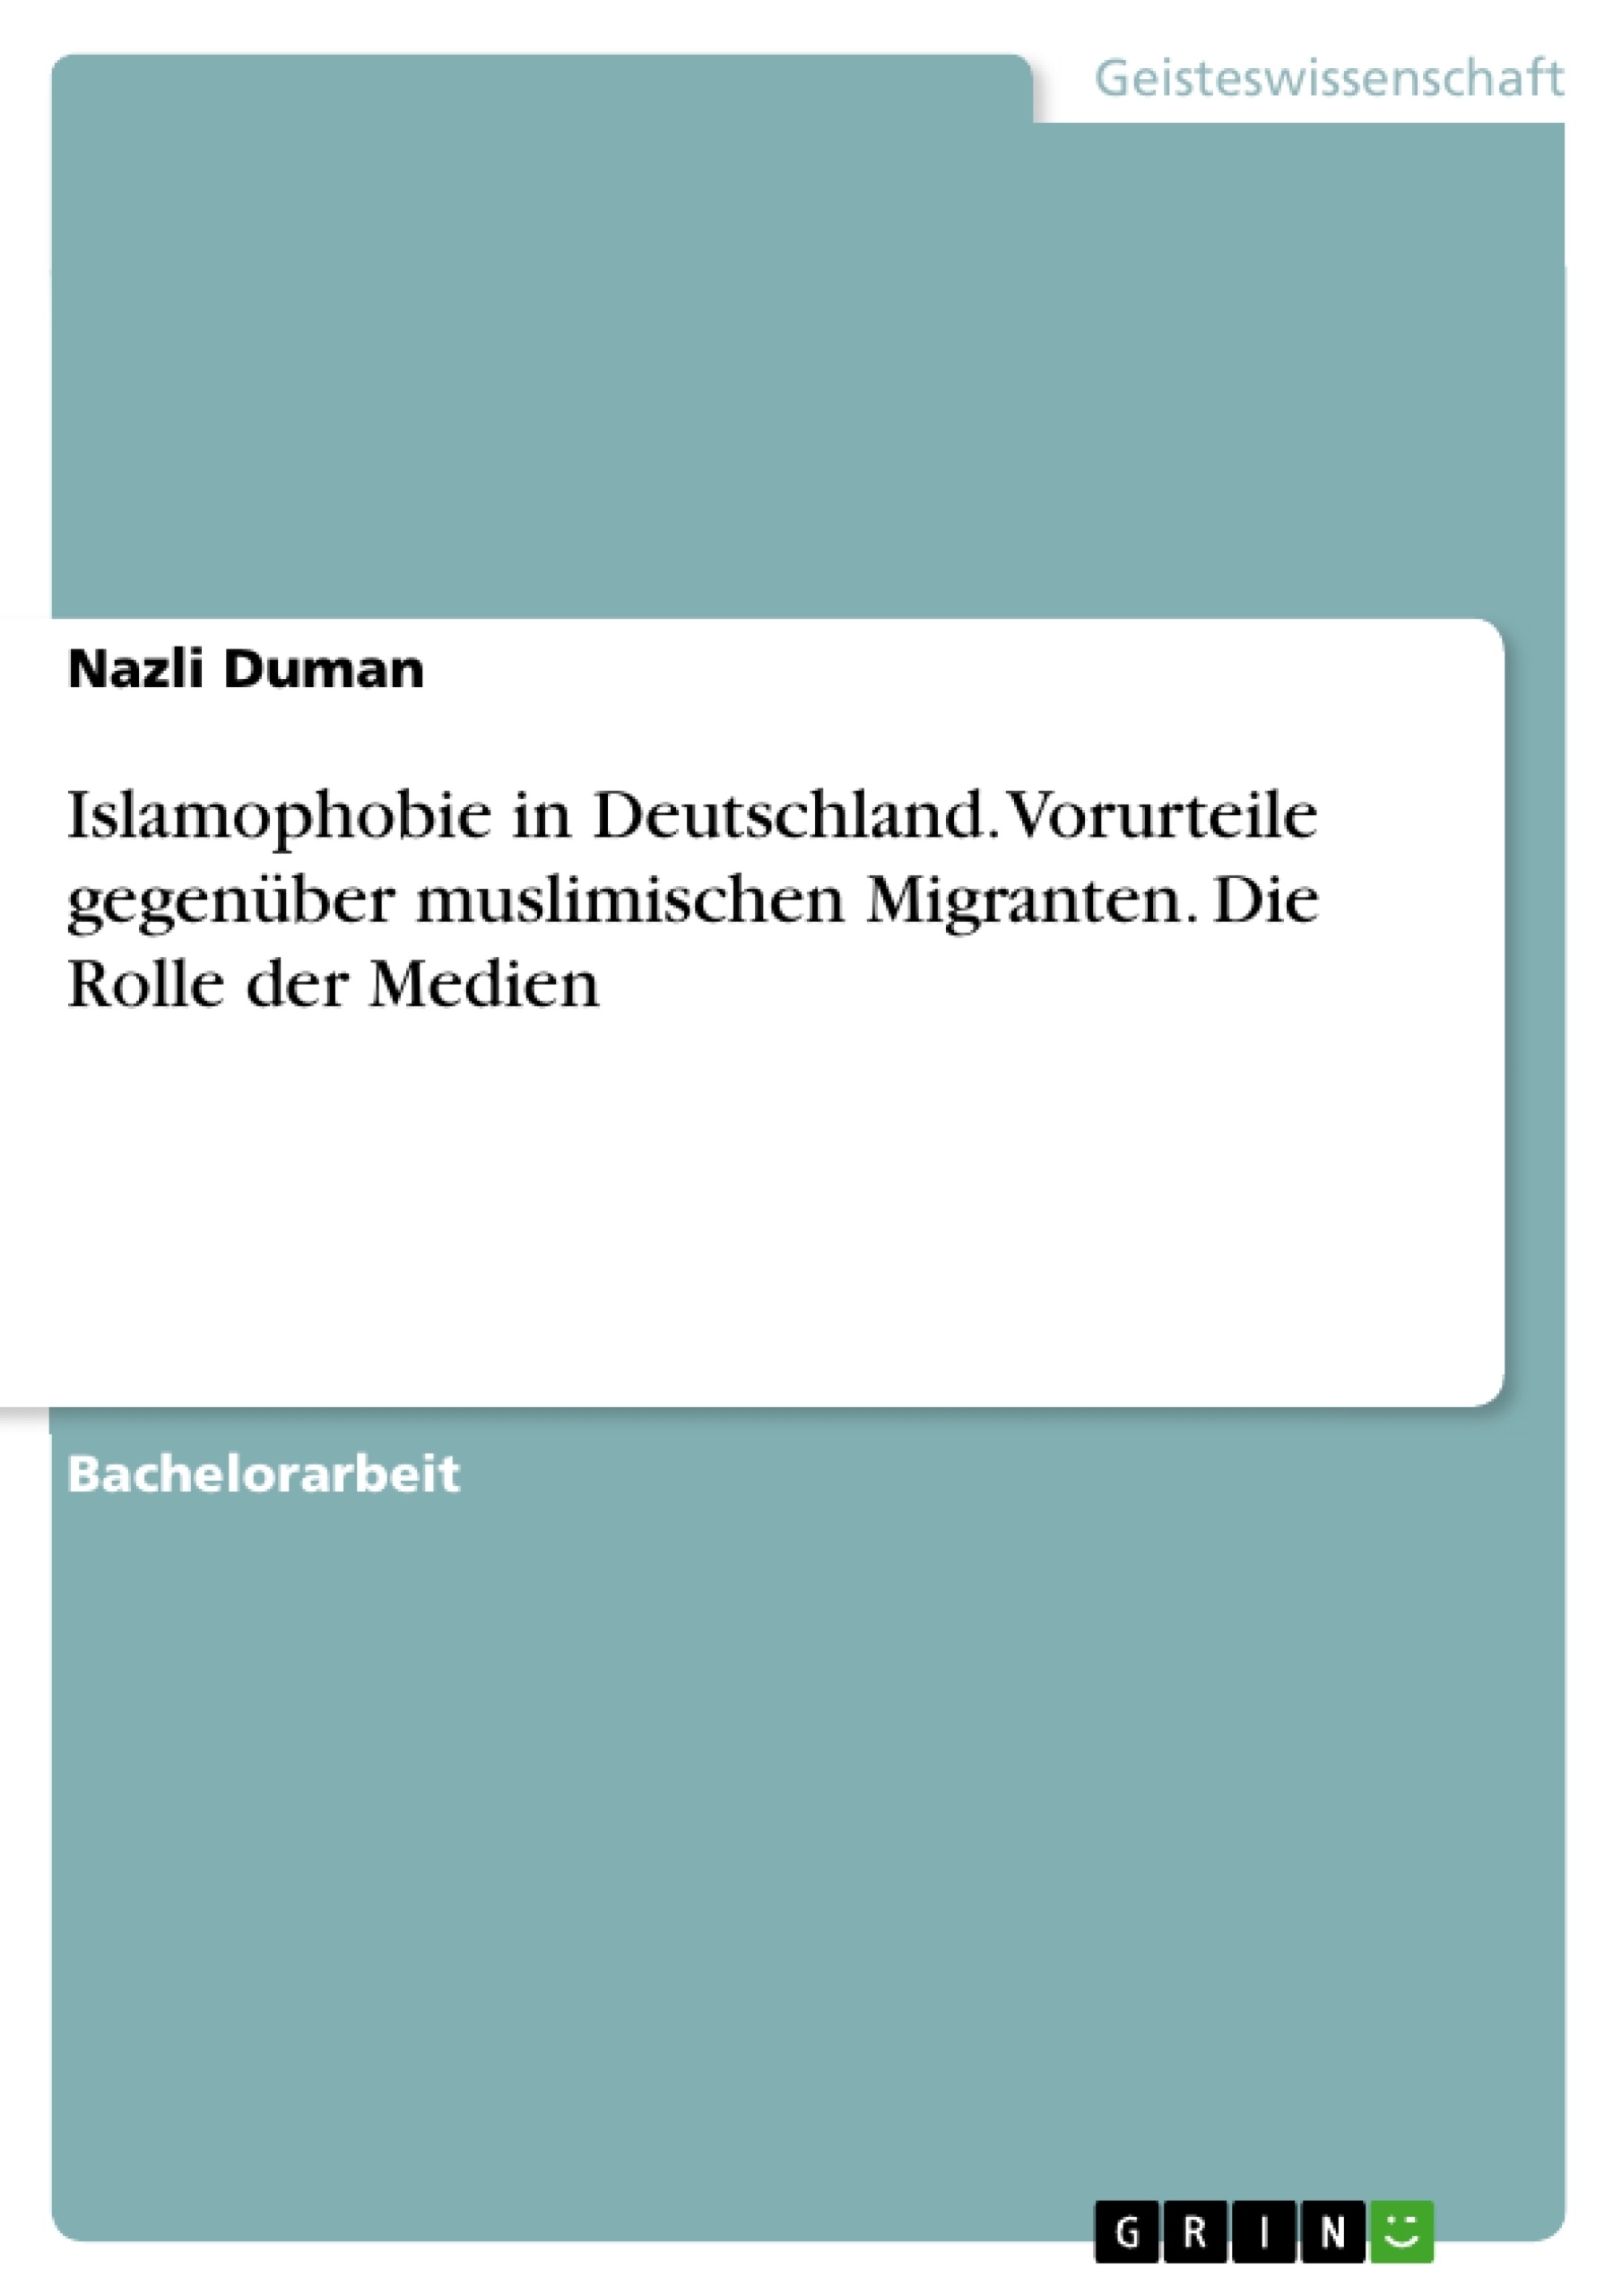 Title: Islamophobie in Deutschland. Vorurteile gegenüber muslimischen Migranten. Die Rolle der Medien